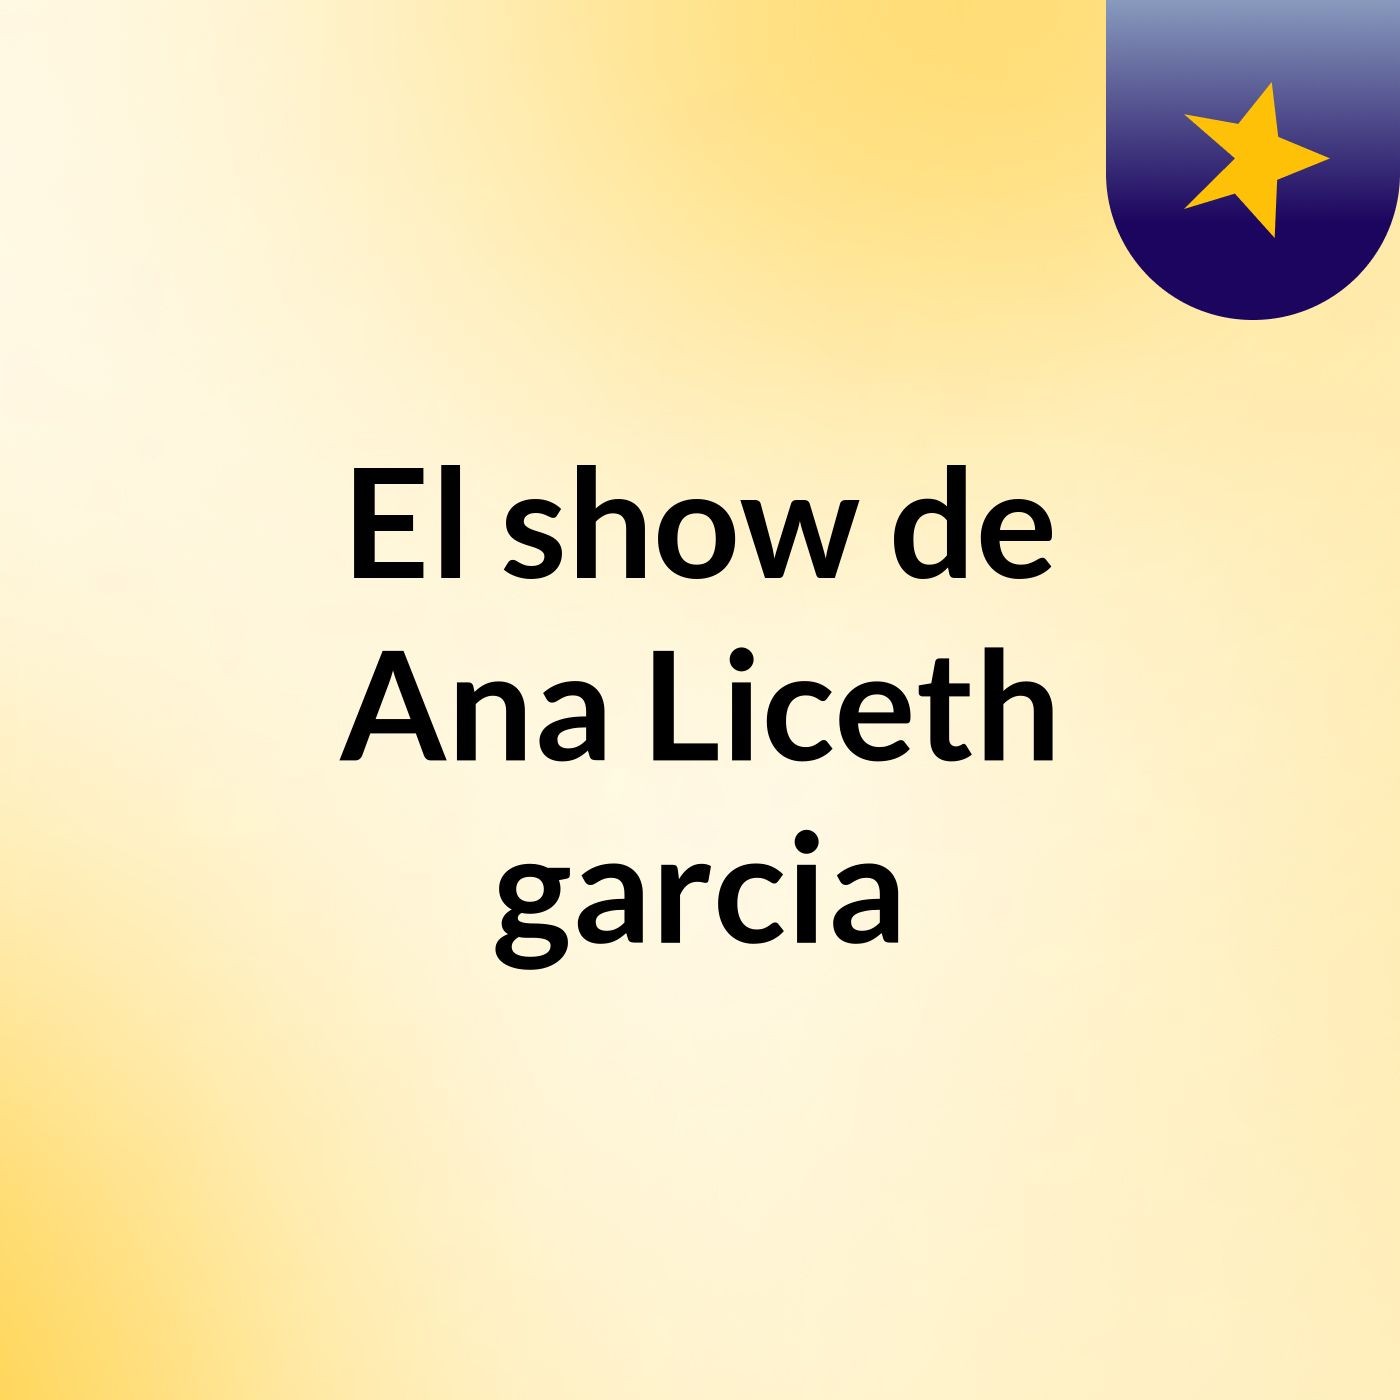 El show de Ana Liceth garcia